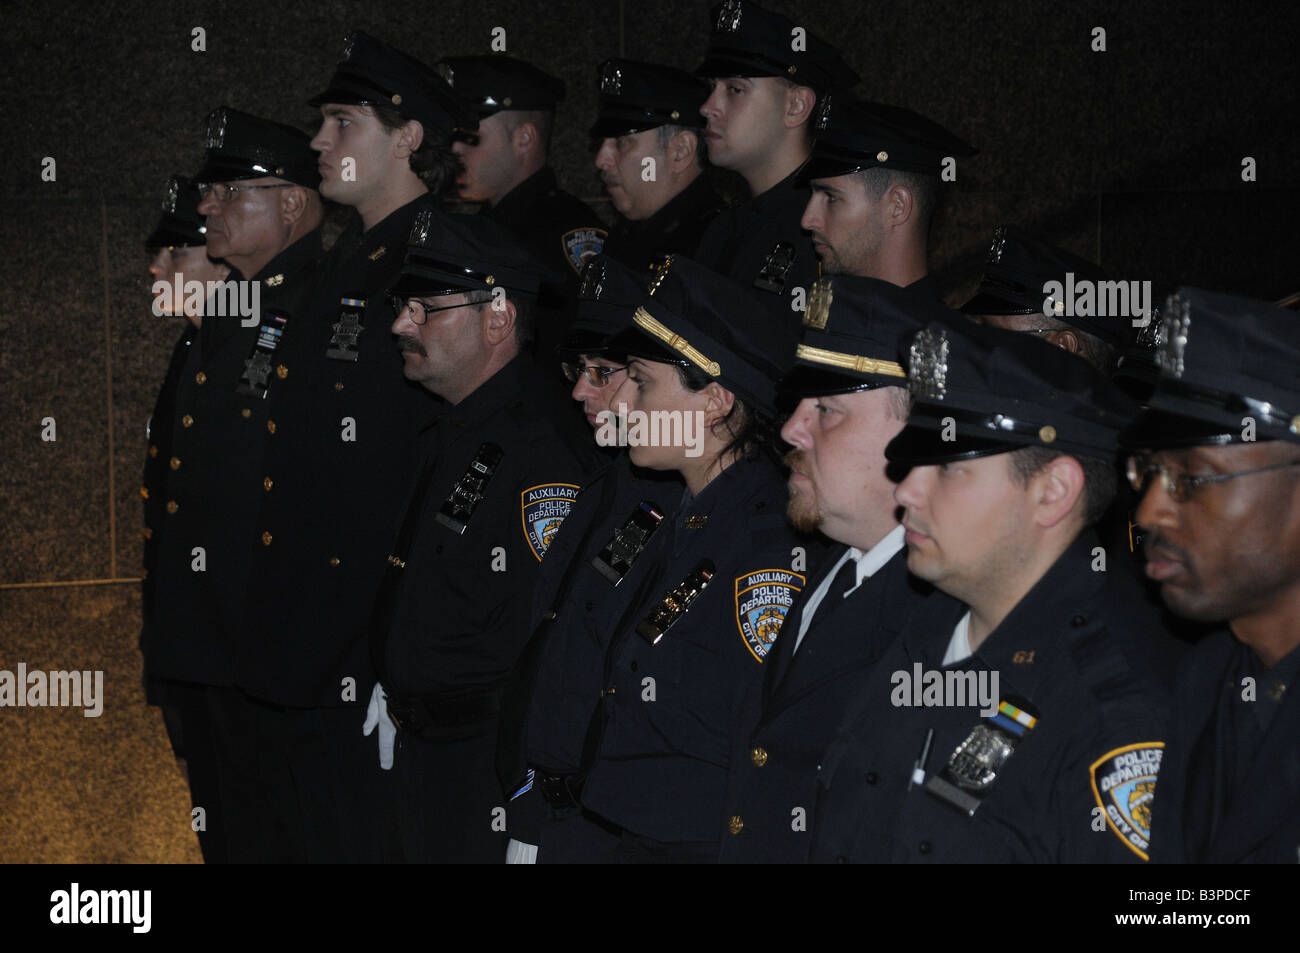 Les policiers de Brooklyn à l'occasion du service commémoratif dans Lower Manhattan pour les policiers tués le 11 septembre. Banque D'Images